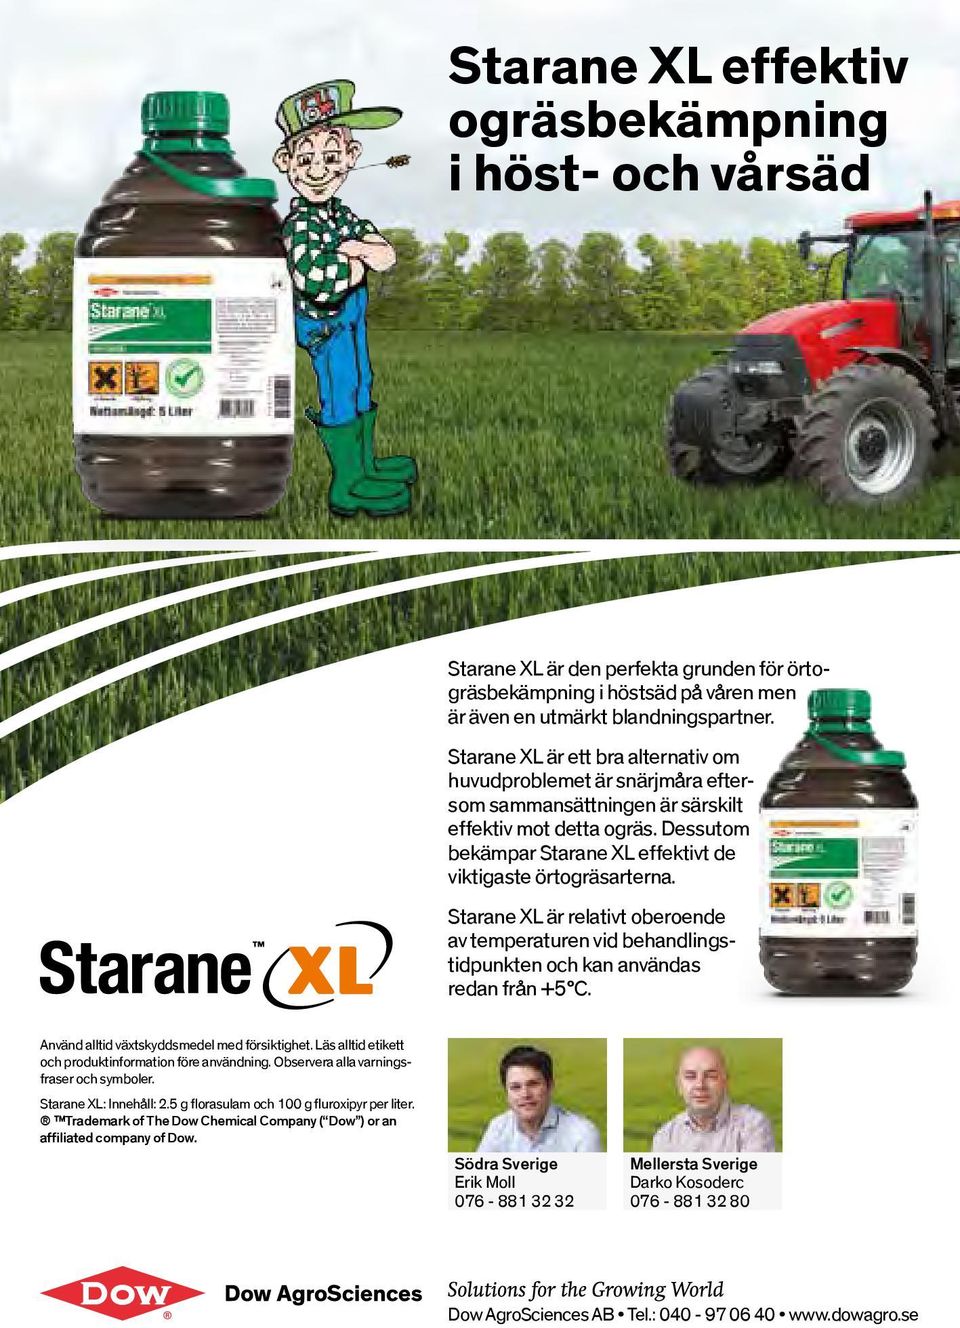 Starane XL är relativt oberoende av temperaturen vid behandlingstidpunkten och kan användas redan från +5 C. Använd alltid växtskyddsmedel med försiktighet.